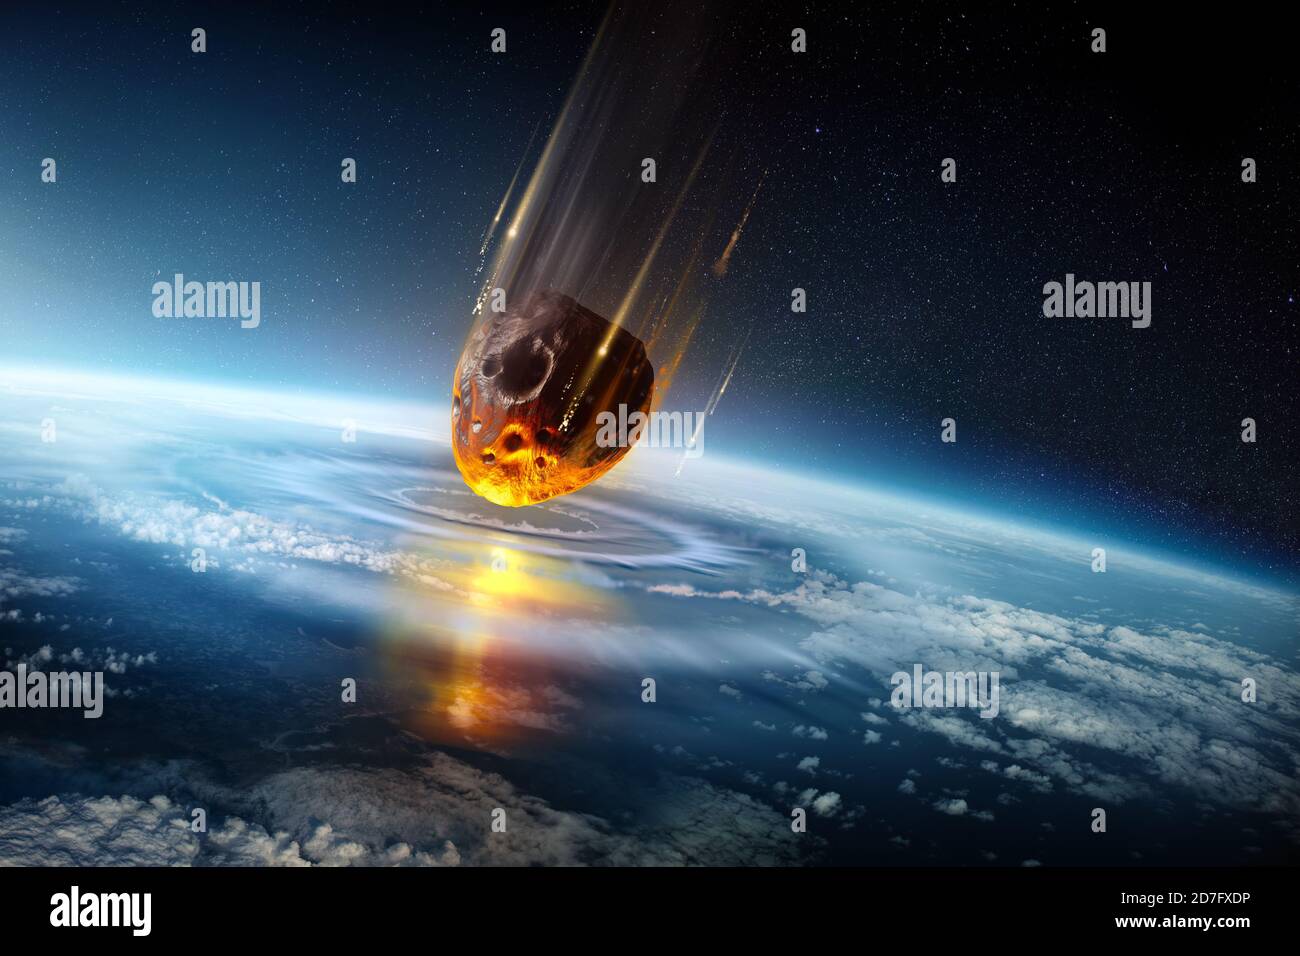 Un'enorme meteora di dimensioni cittadine si schiaffa nell'atmosfera terrestre creando onde d'urto. Estinzione di massa evento di sciopero meteorico illustrazione scientifica 3D. Foto Stock